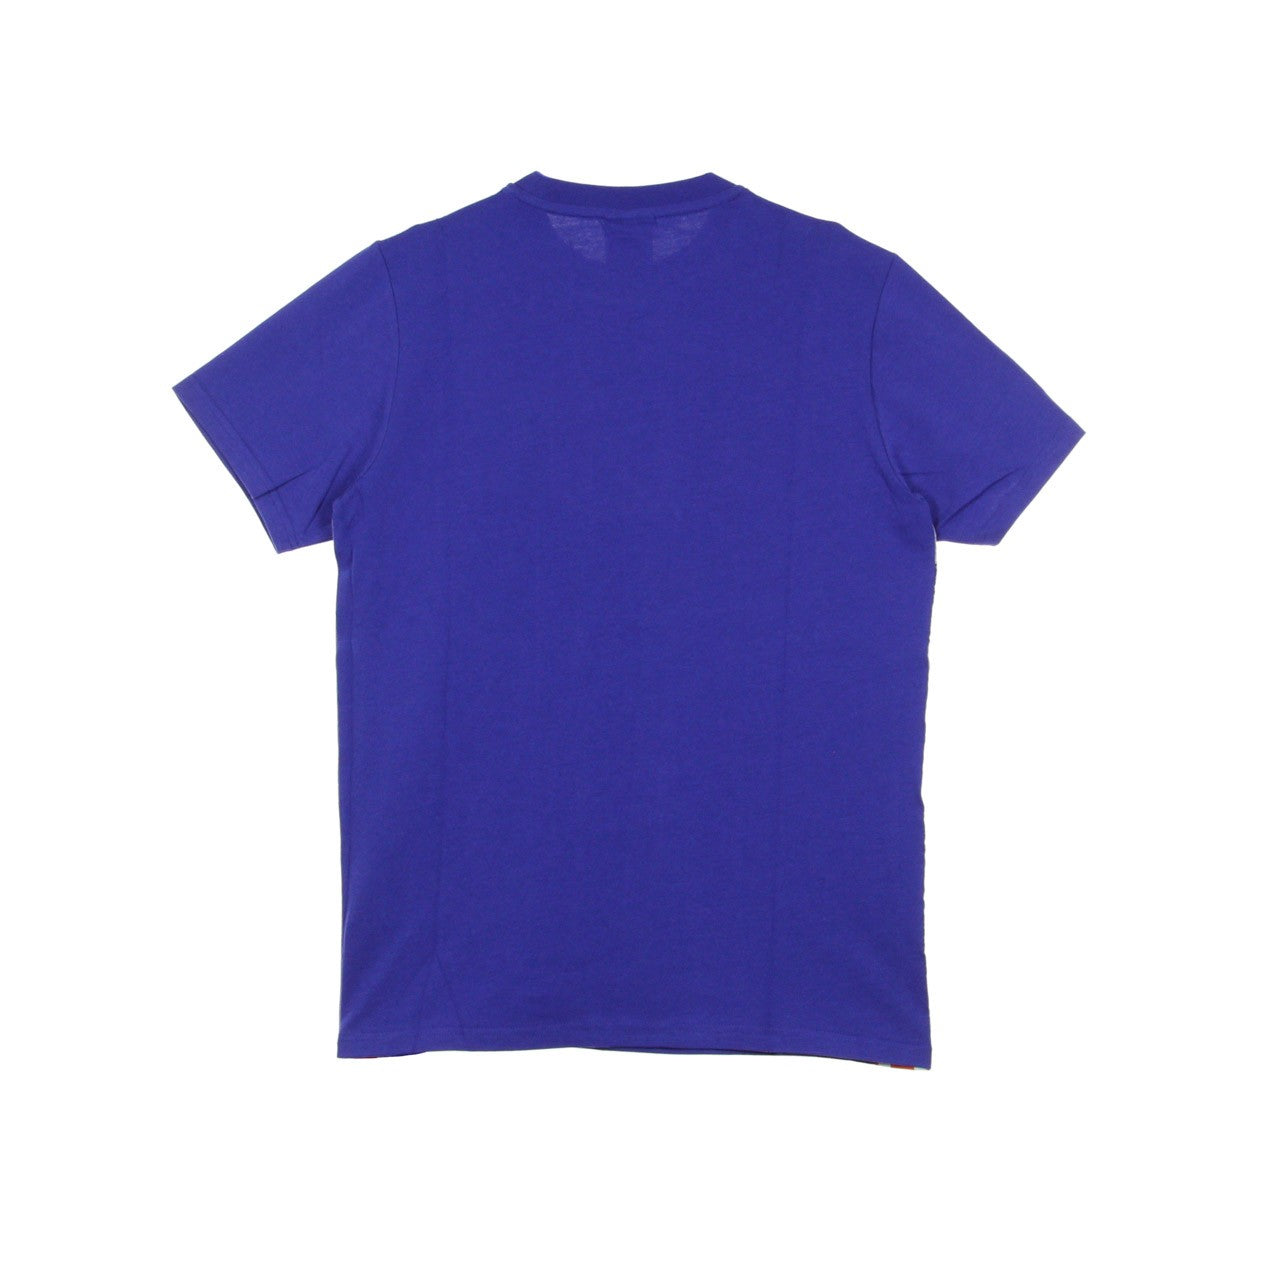 Authentic La Barwa Men's T-Shirt Blue/blue